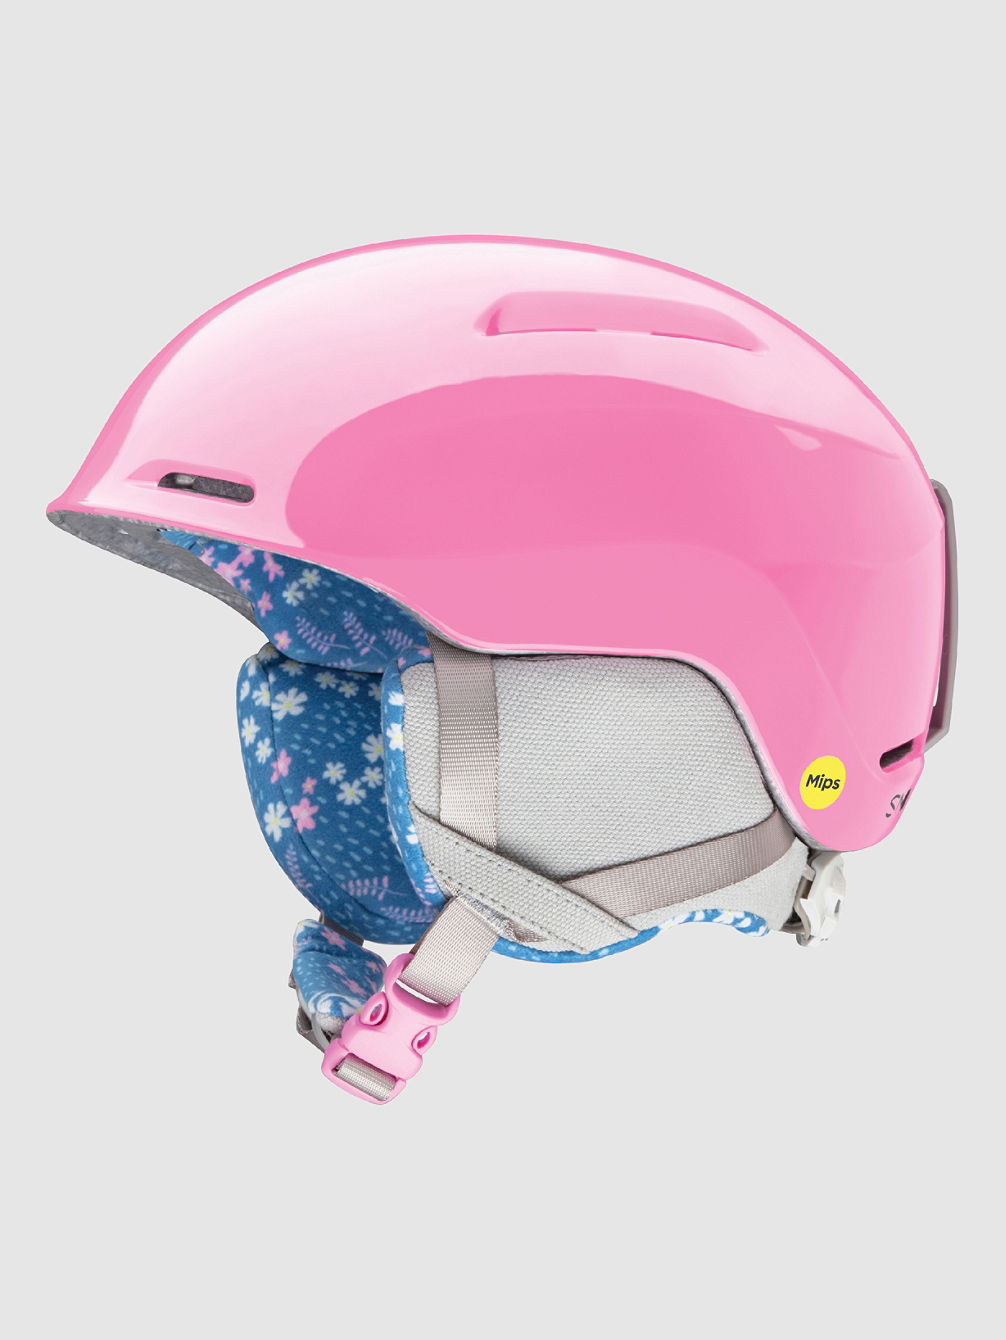 Glide J MIPS Helmet